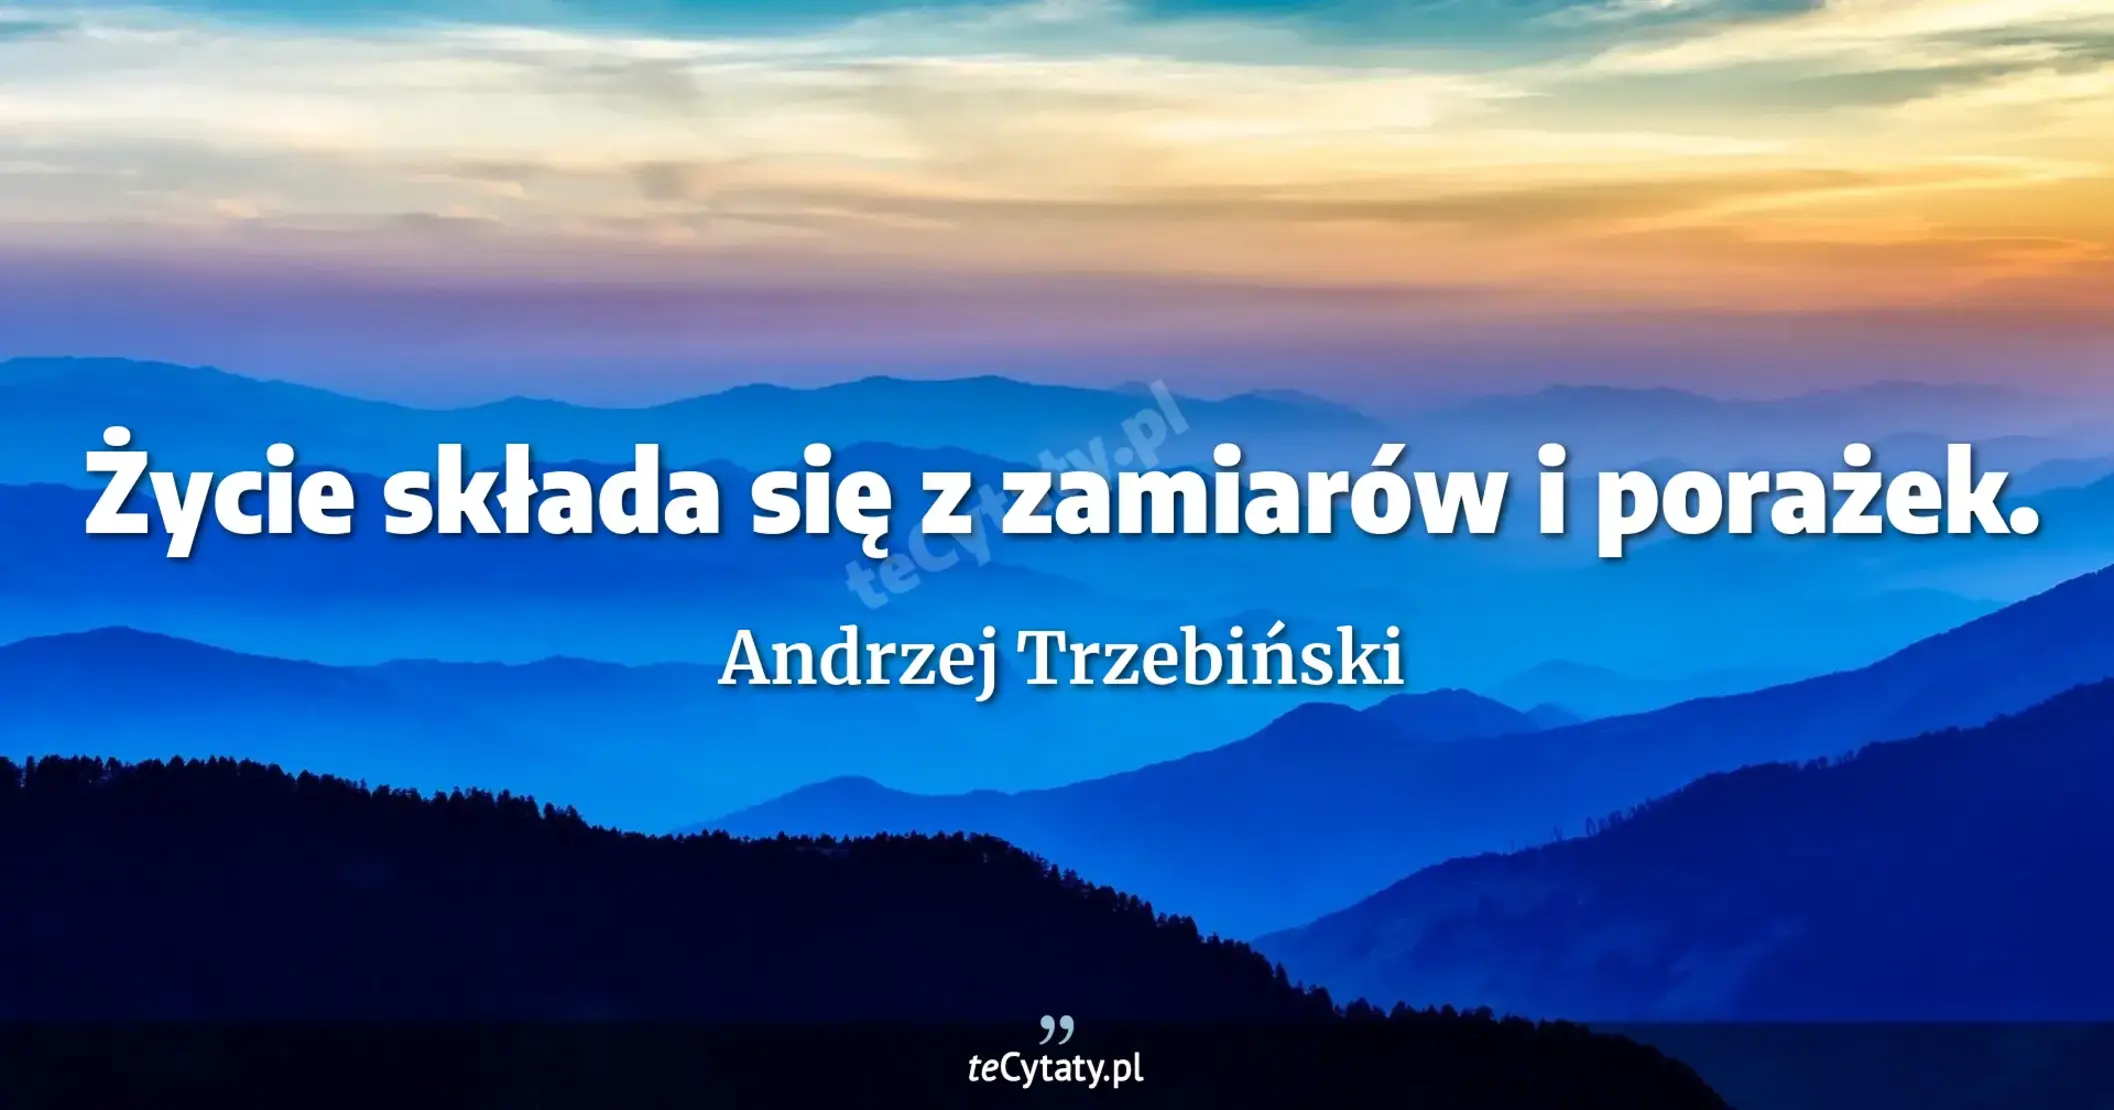 Życie składa się z zamiarów i porażek. - Andrzej Trzebiński